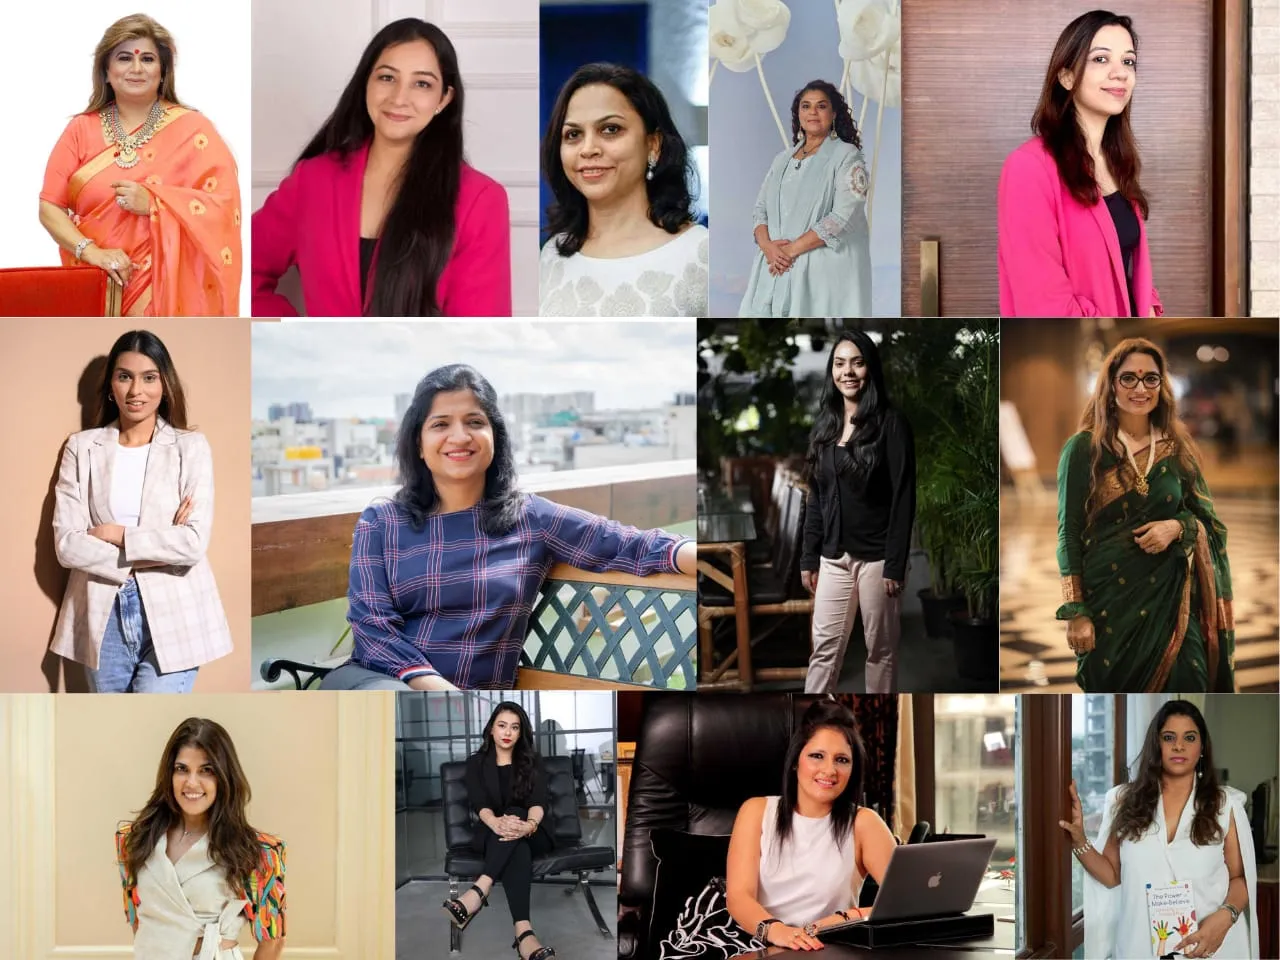 Women entrepreneurs share challenges